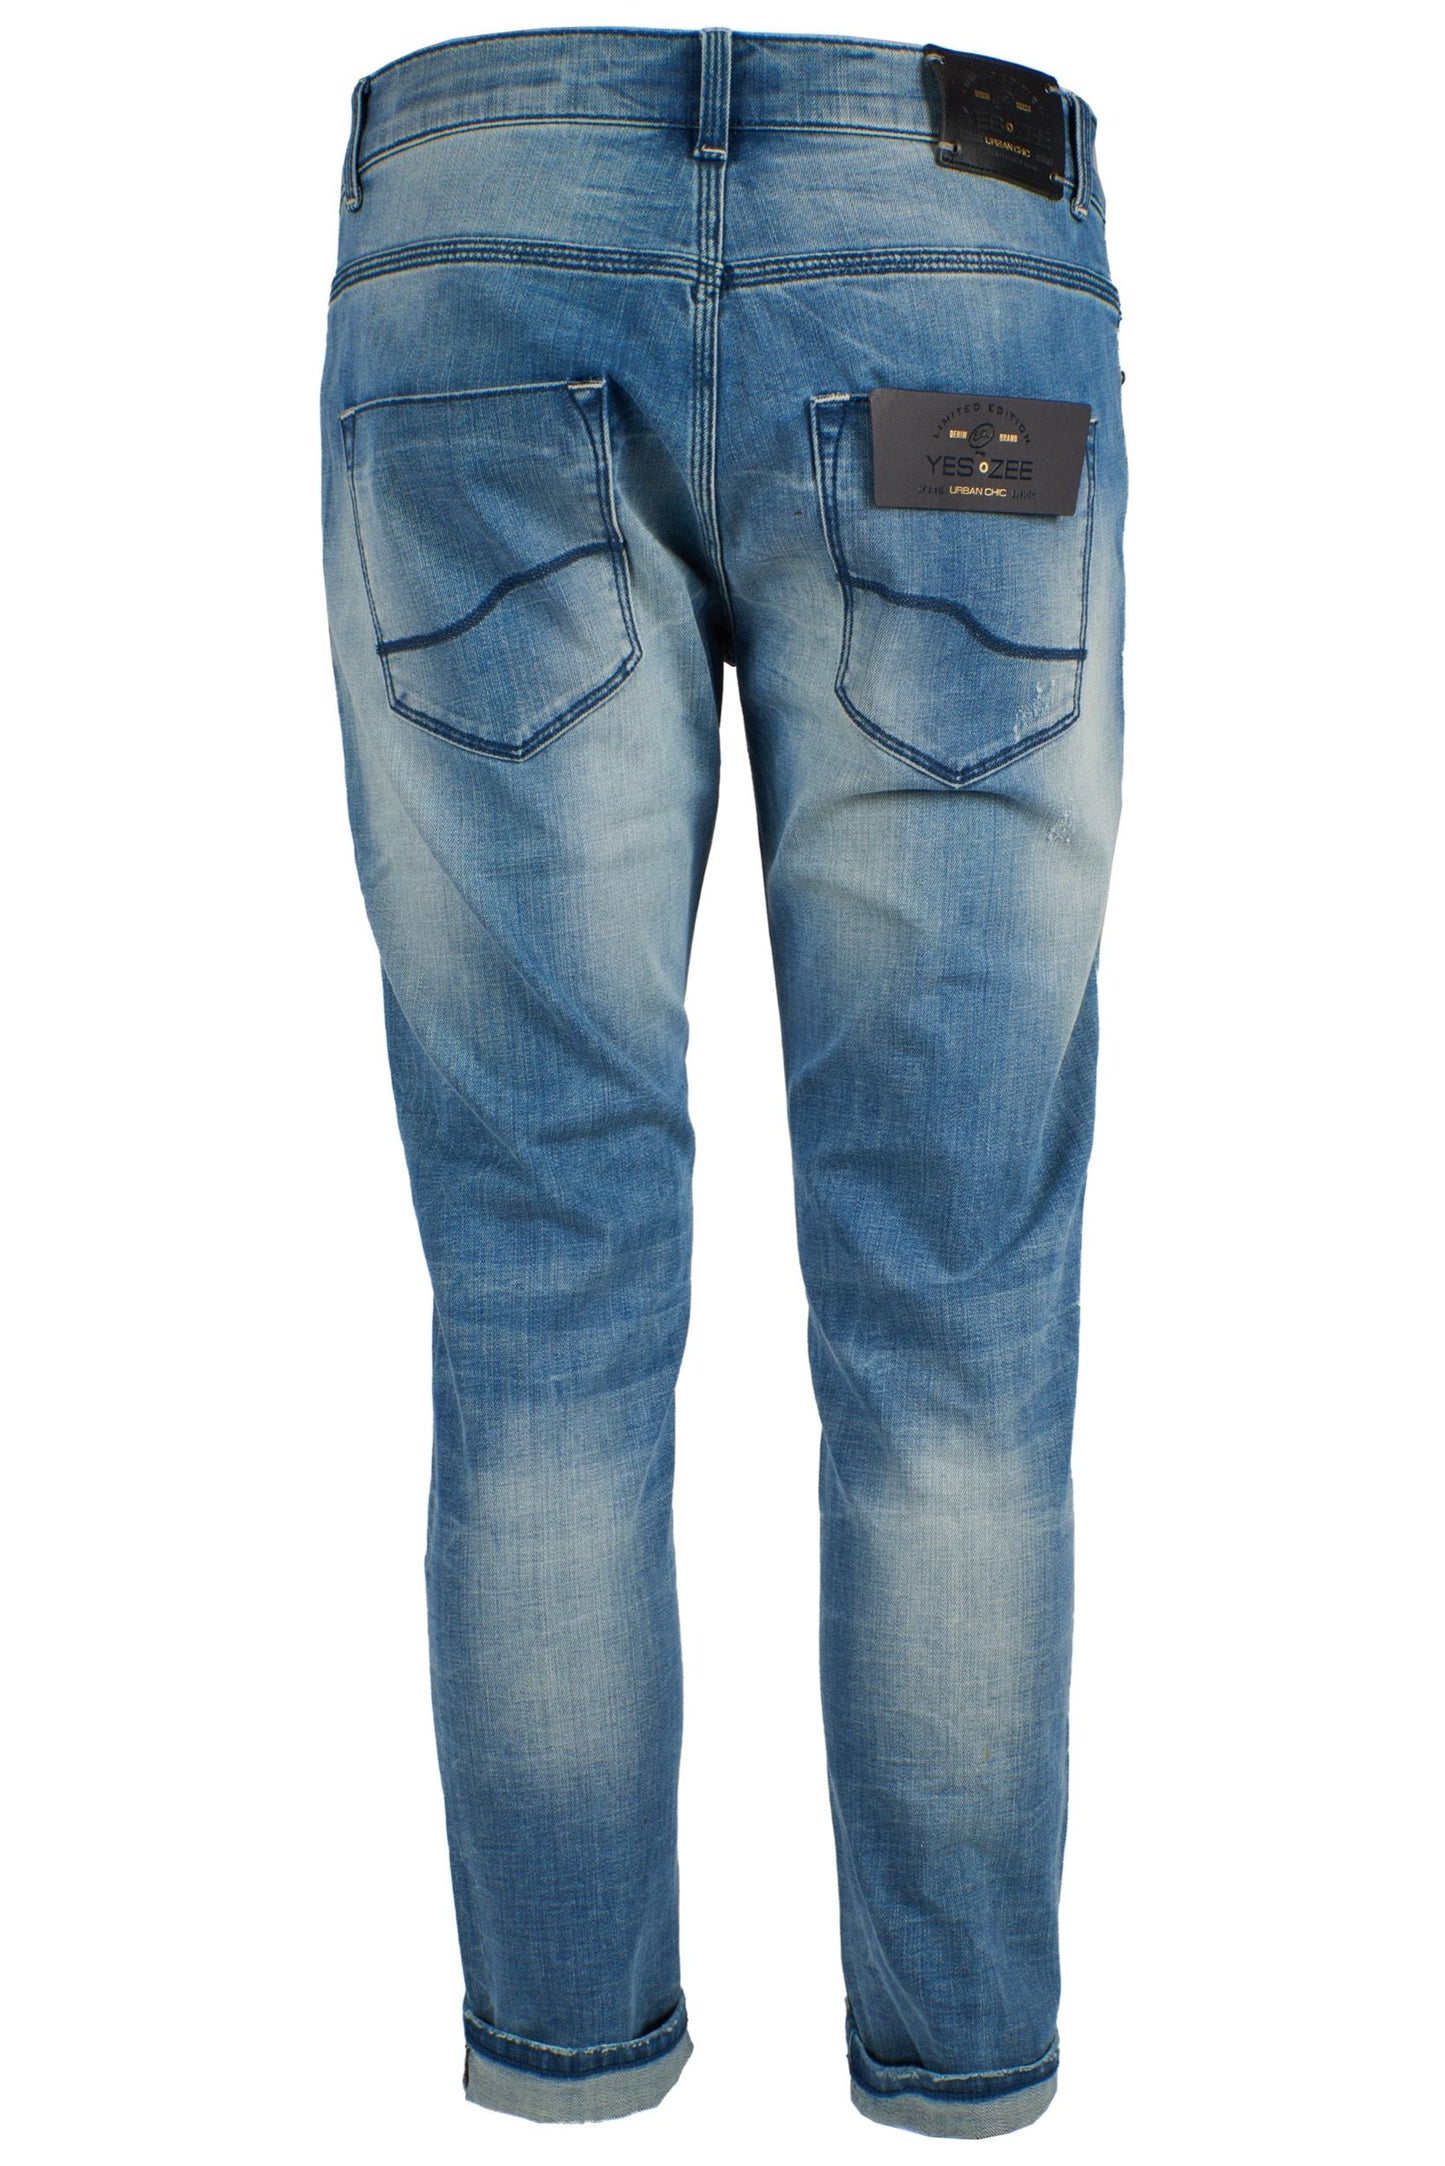 Sleek Light Wash Five-Pocket Jeans for Men